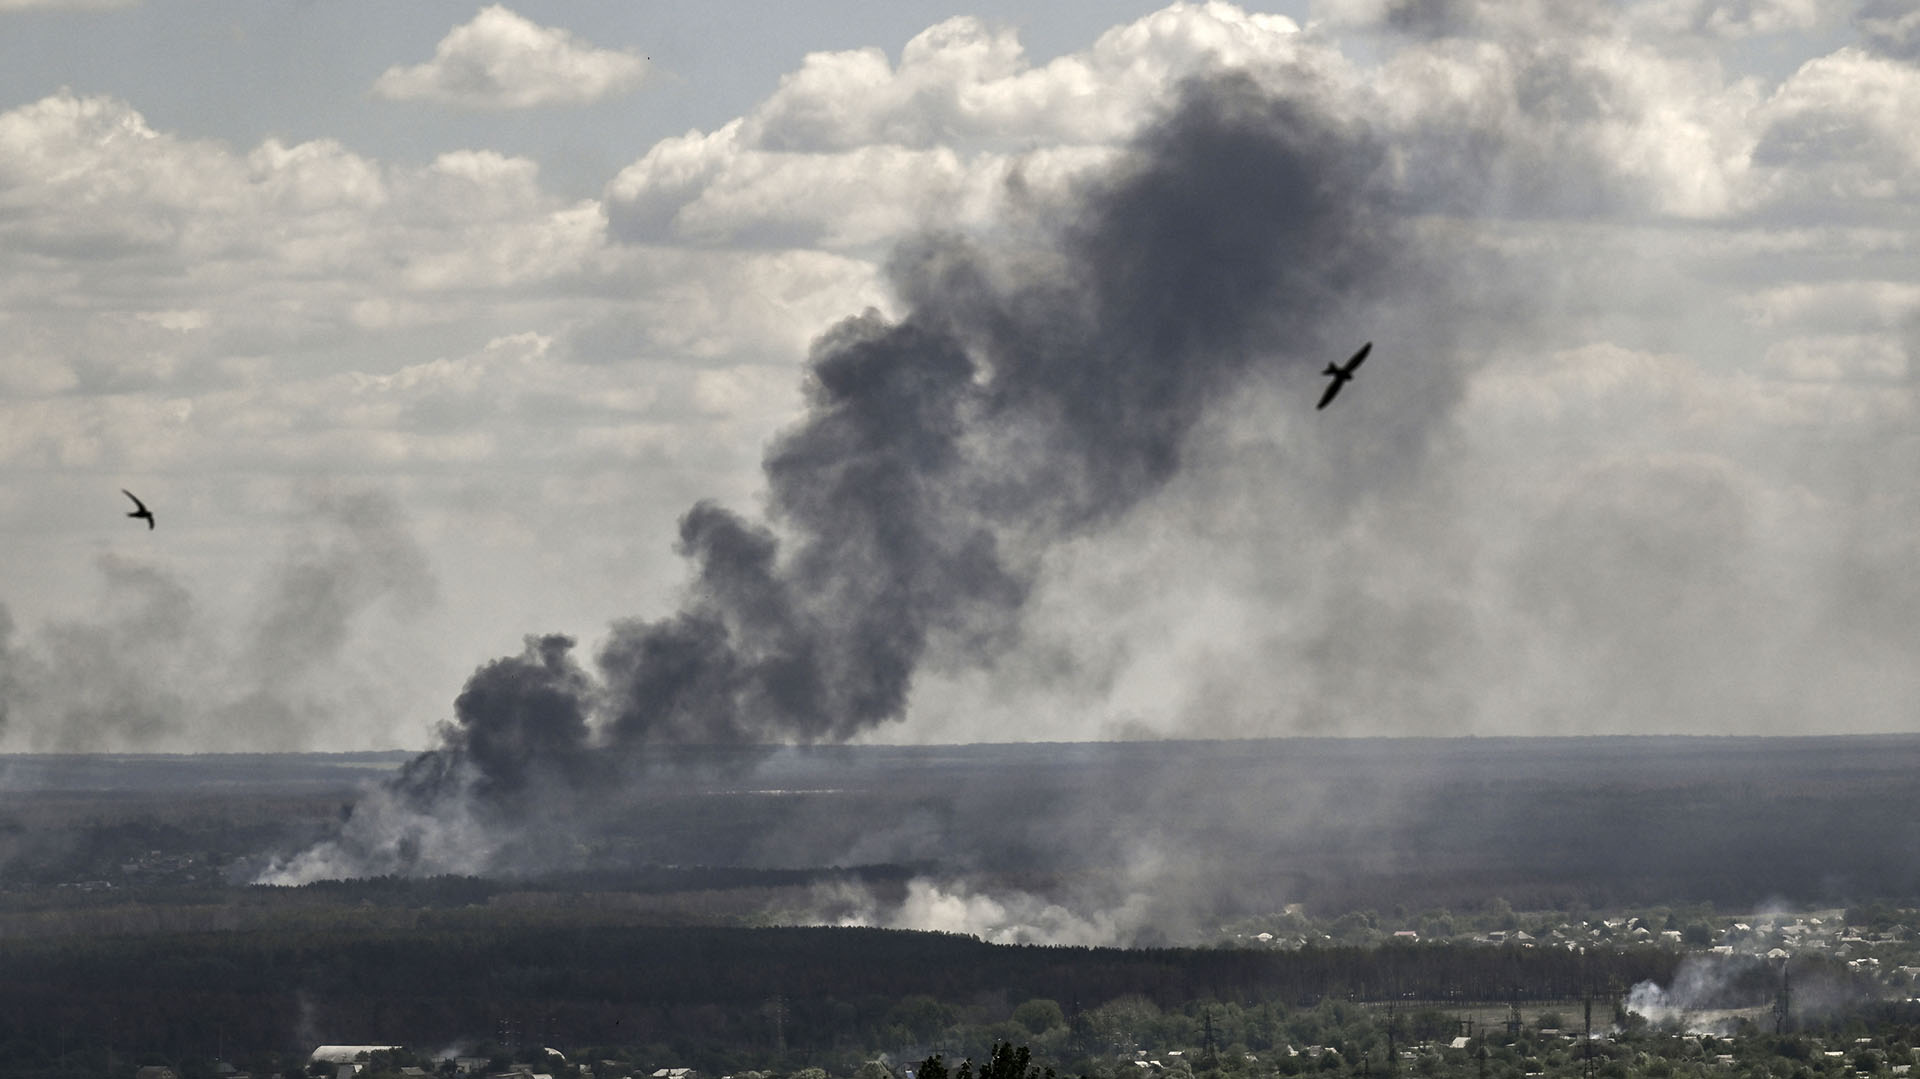 El humo y la suciedad se elevan por los bombardeos en la ciudad de Severodonetsk durante la lucha entre las tropas ucranianas y rusas en la región oriental de Ucrania de Donbas. (Foto de ARIS MESSINIS / AFP)